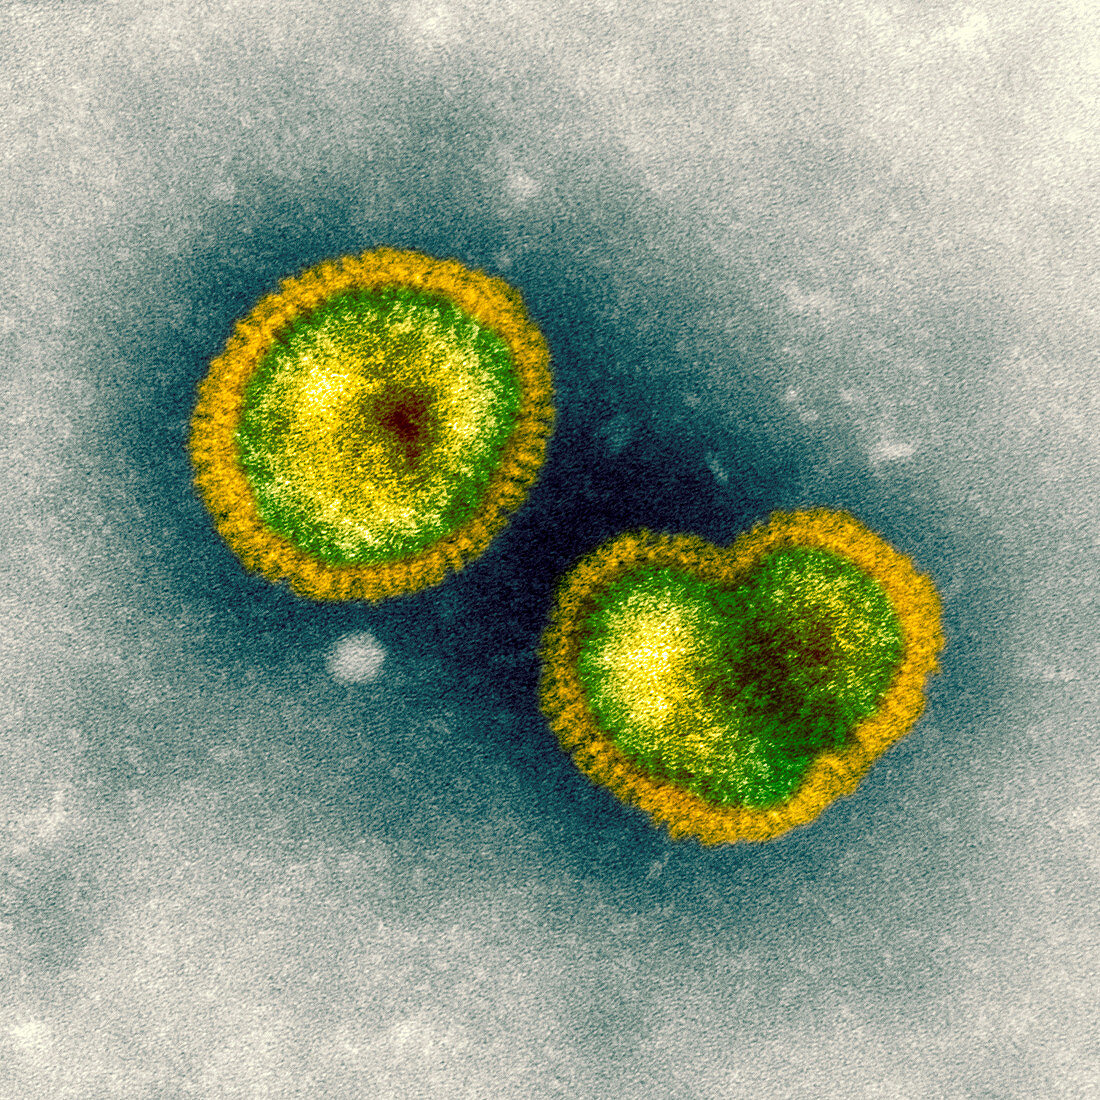 Influenzavirus B,TEM